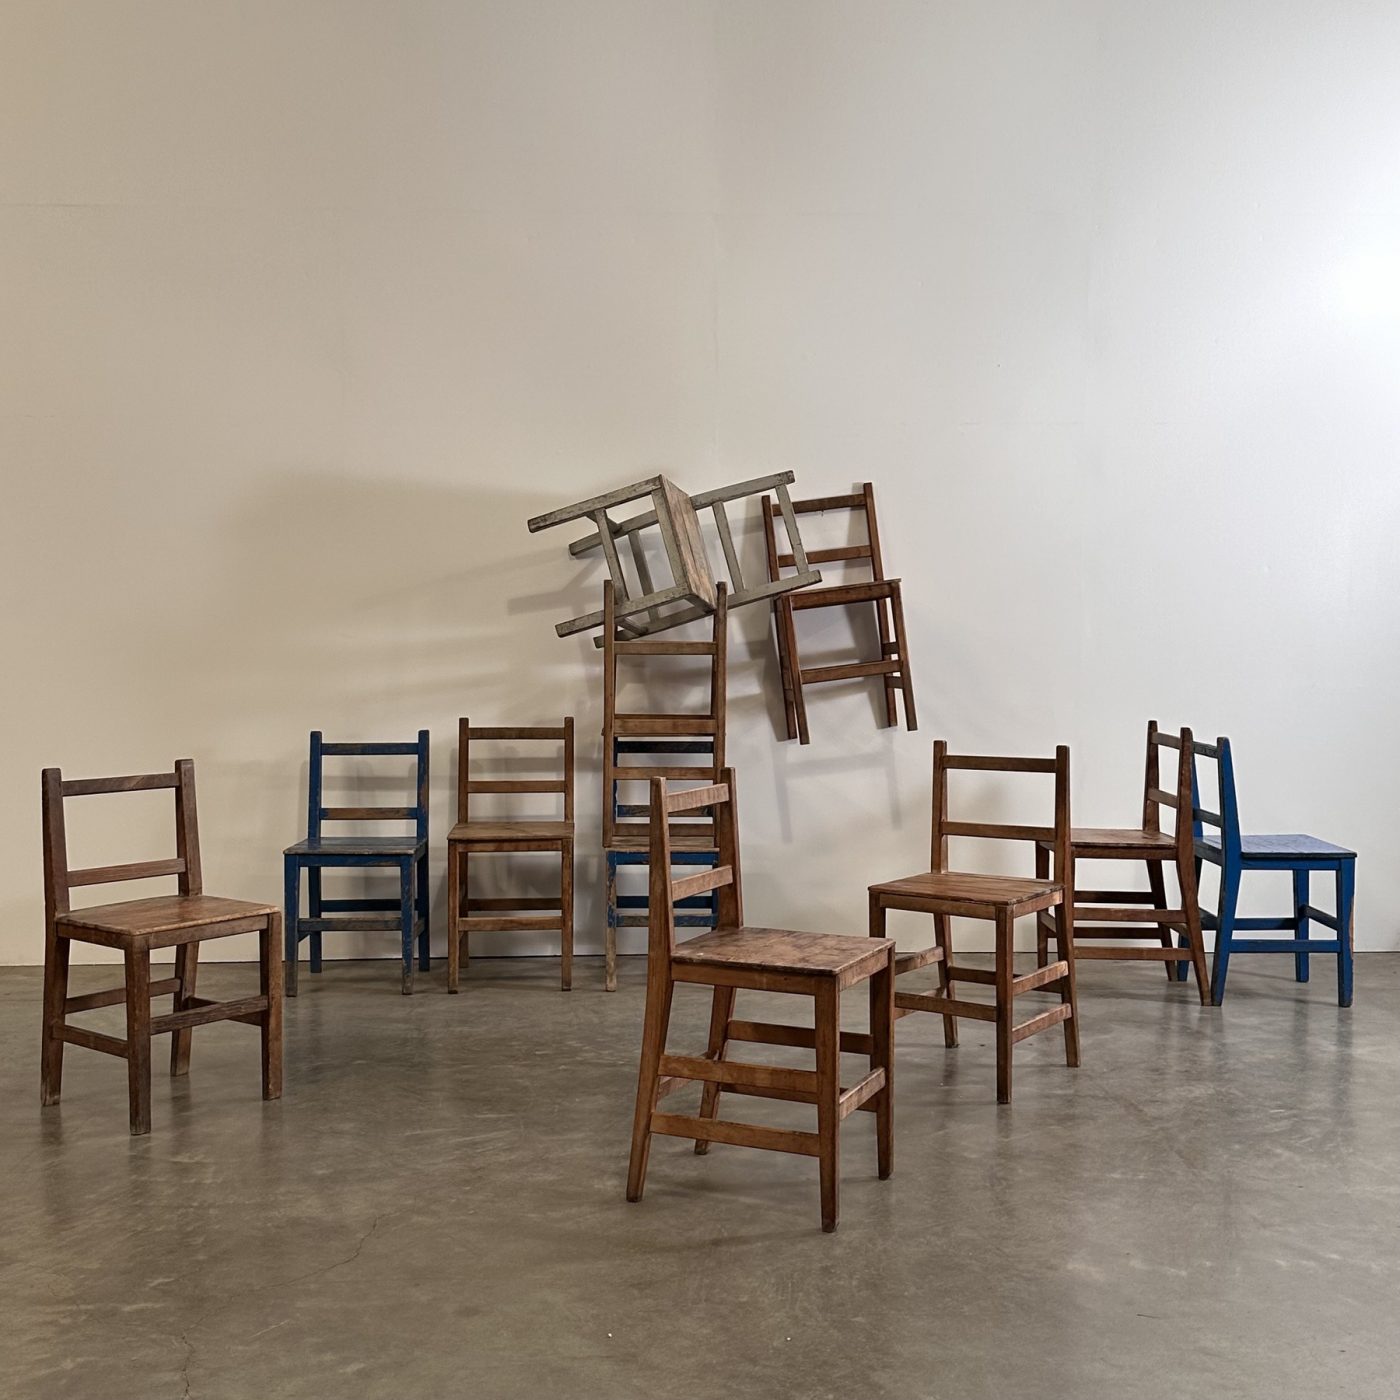 objet-vagabond-naive-chairs0002